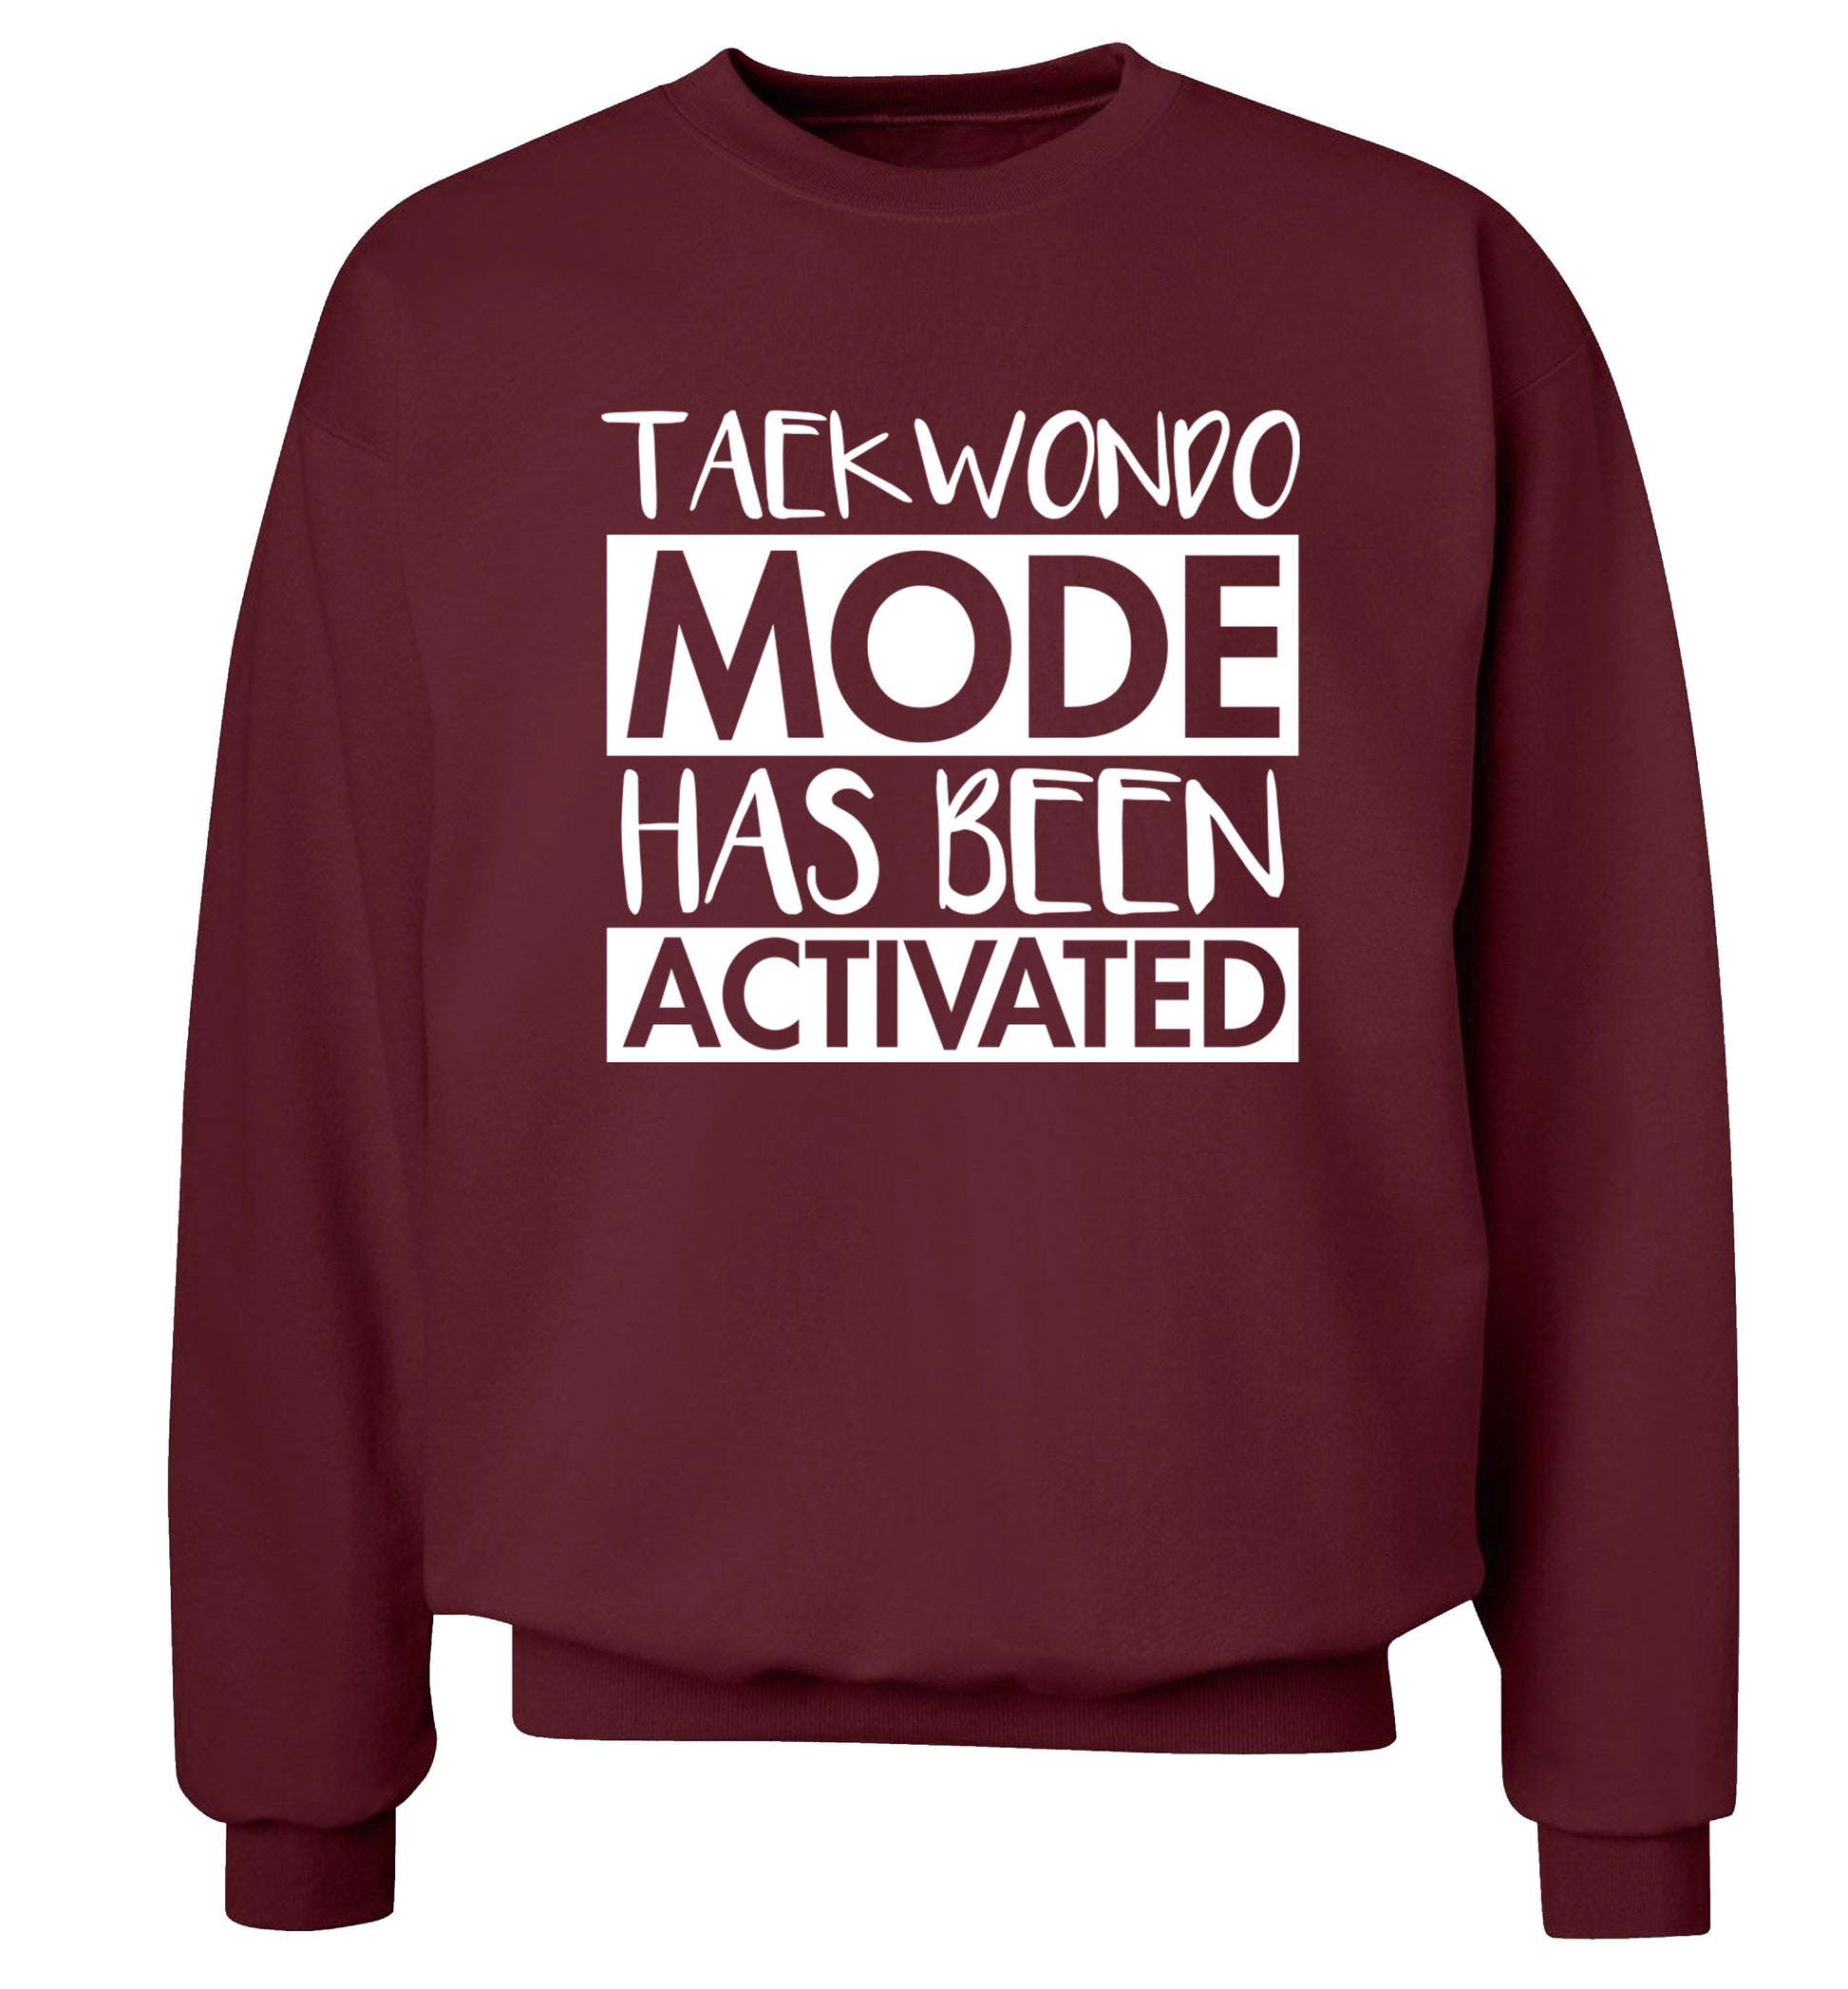 Taekwondo mode activated Adult's unisex maroon Sweater 2XL